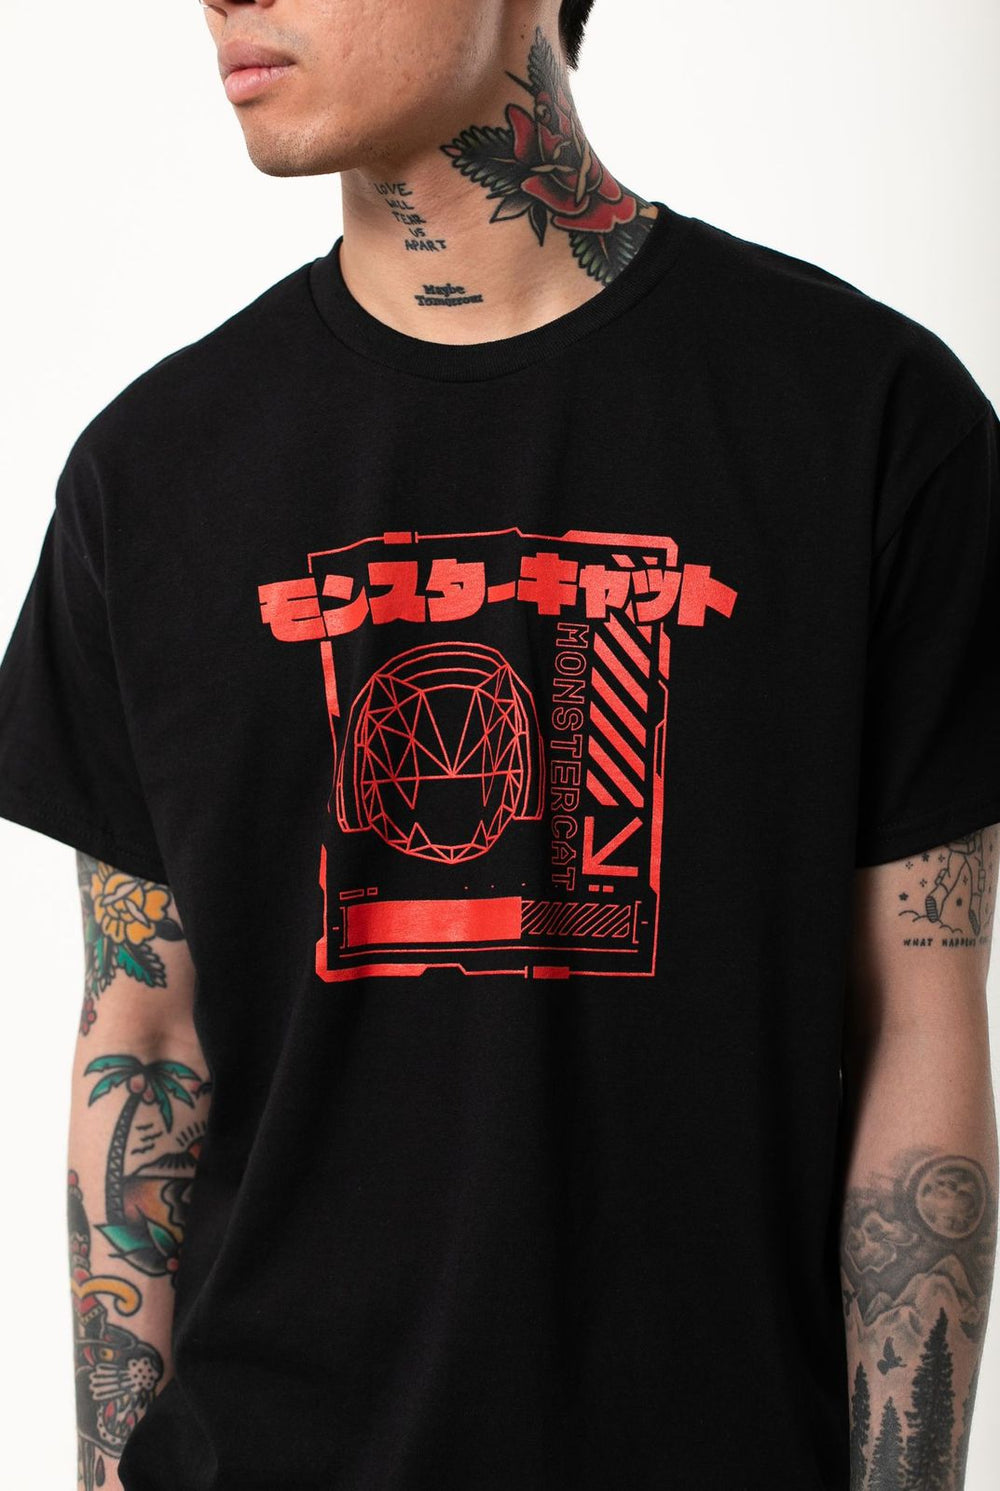 Ctrl+N - Black Short Sleeve T-Shirt